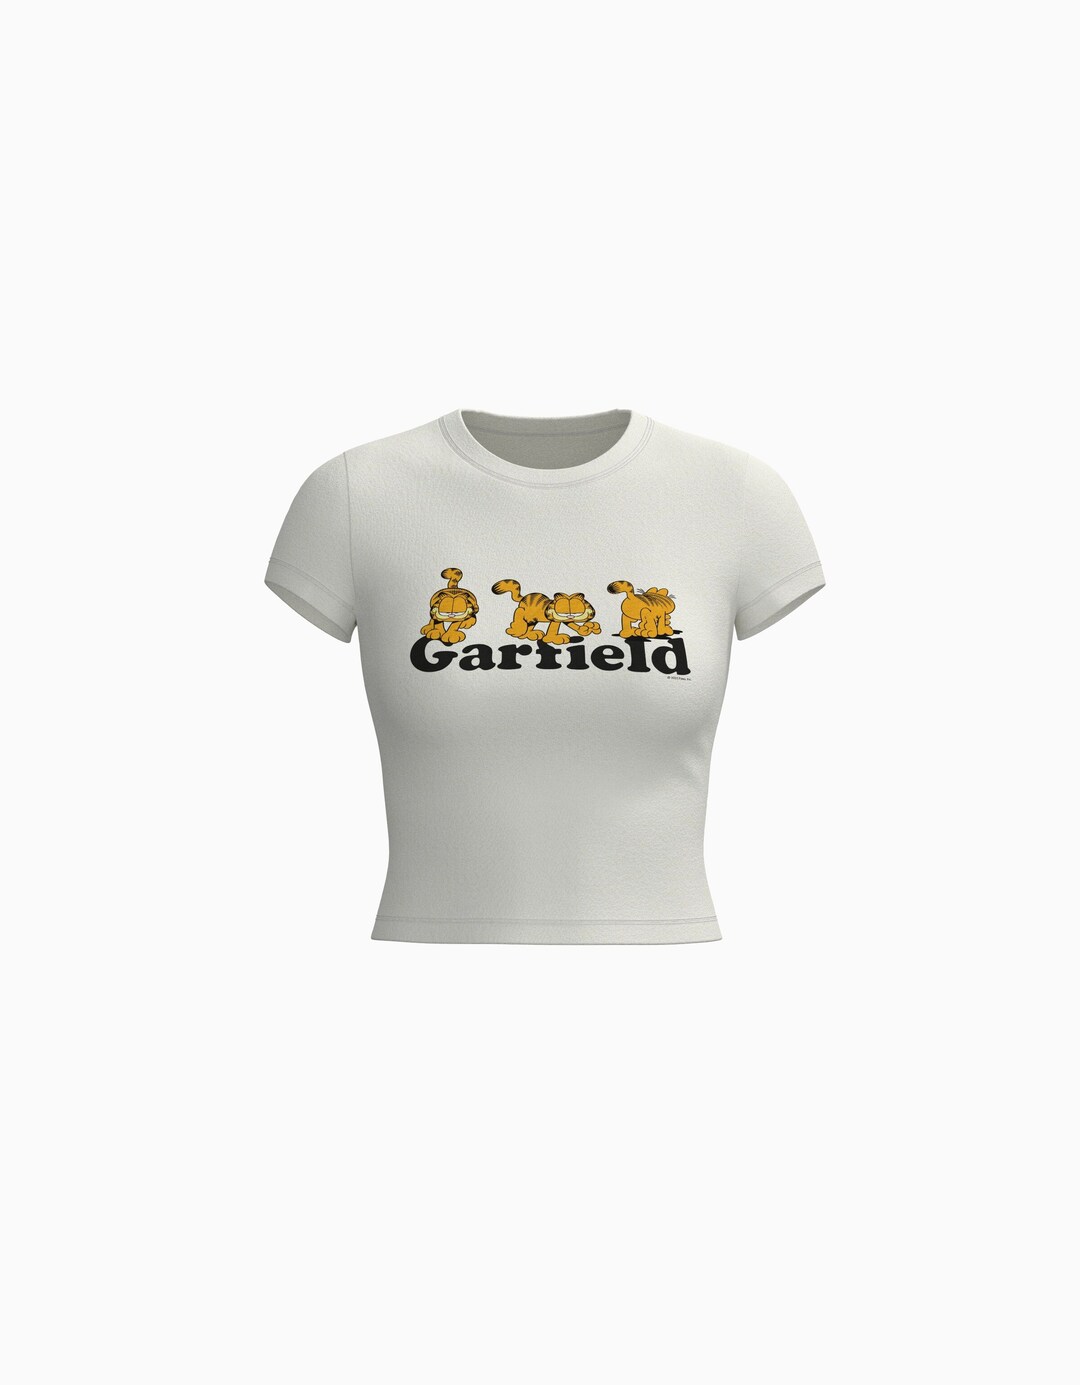 T-shirt manches courtes moulant imprimé Garfield